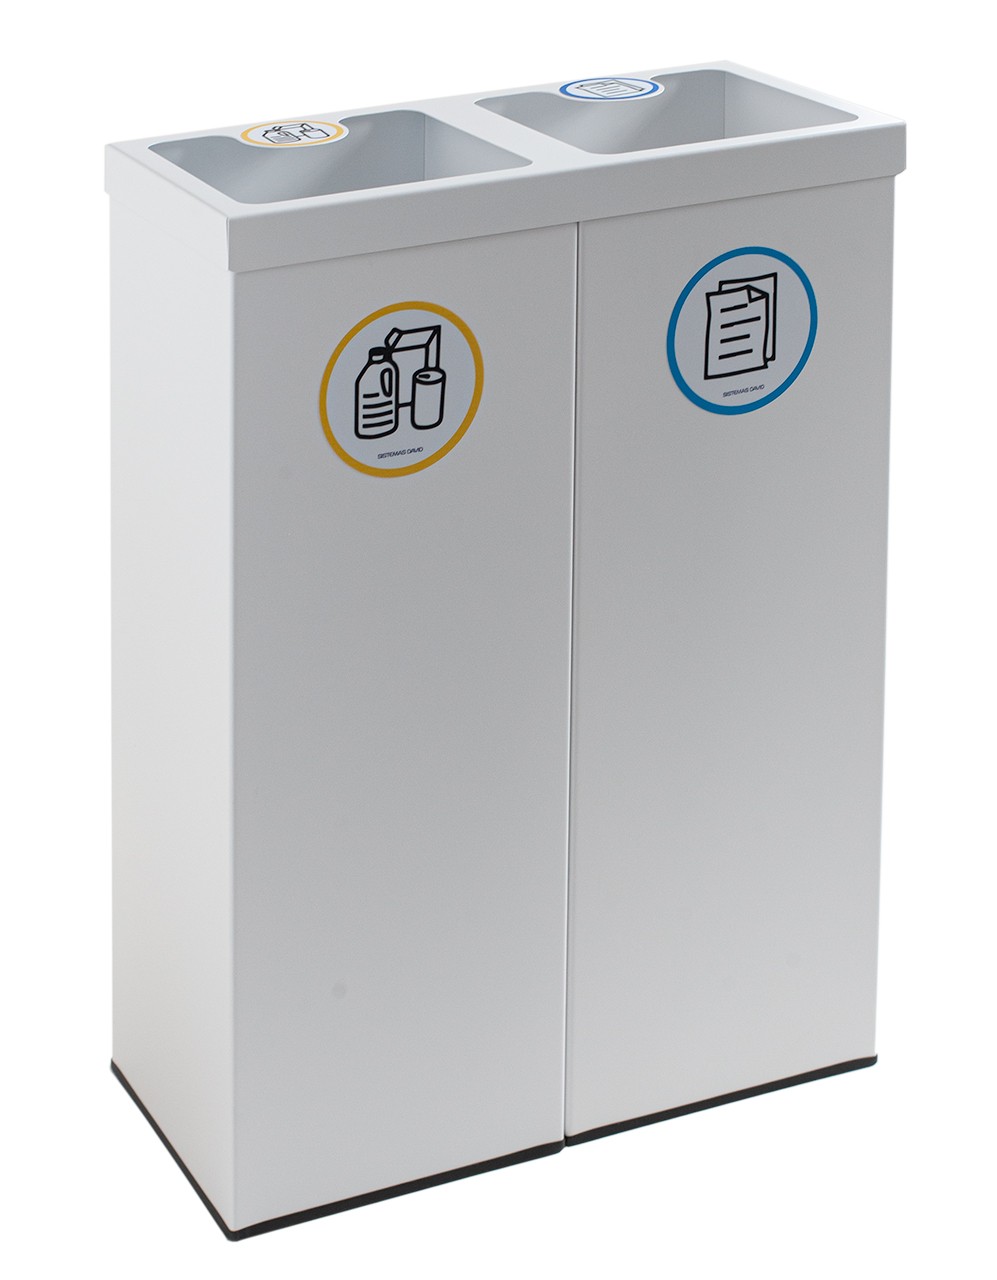 Papelera metálica blanca de reciclaje 2 residuos. Capacidad 88 litros  (Amarillo / Azul) - Respira de compres al Ripollès